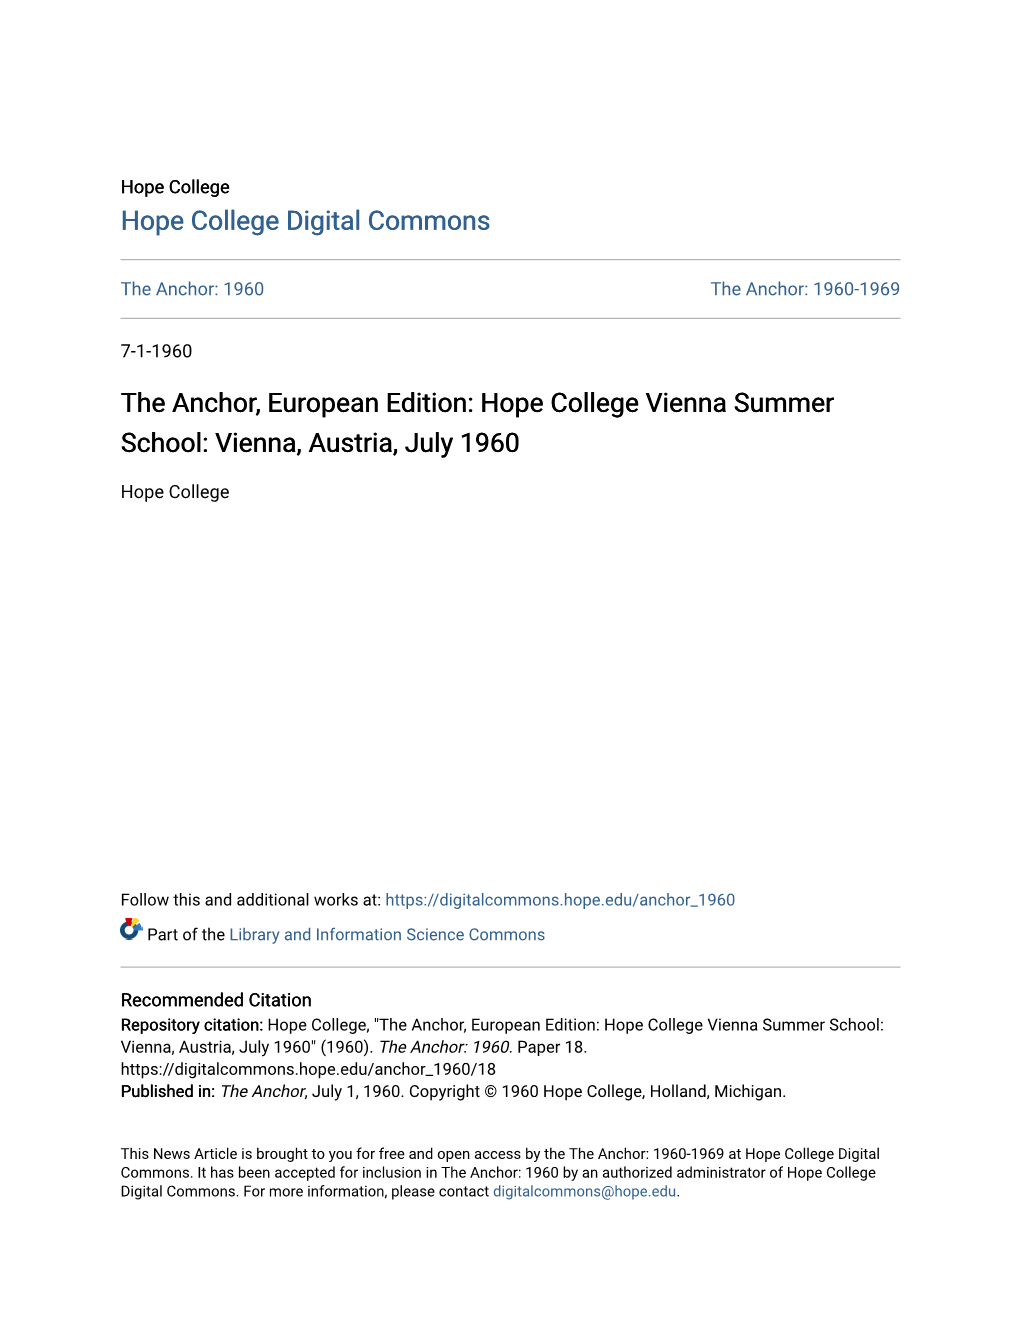 The Anchor, European Edition: Hope College Vienna Summer School: Vienna, Austria, July 1960